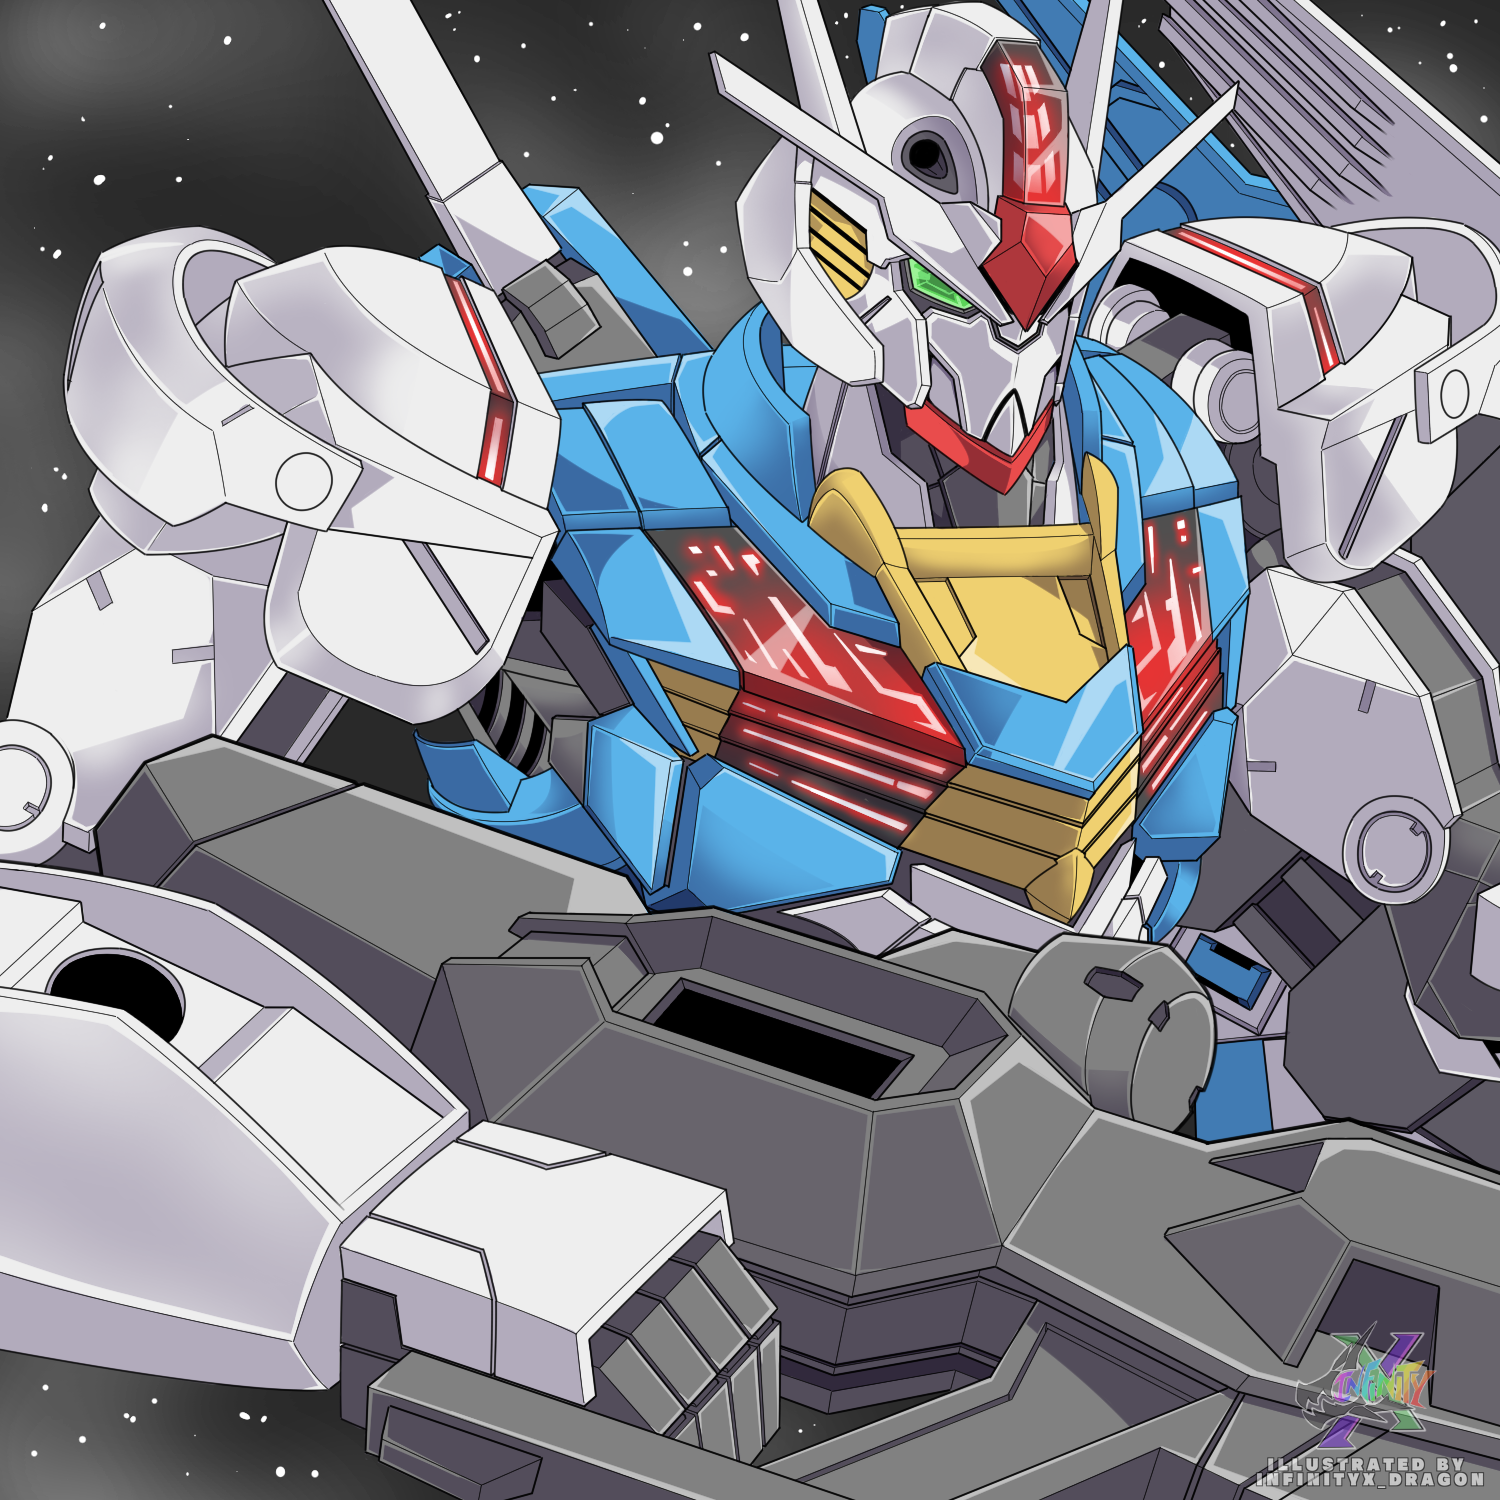 Anime 1500x1500 Mobile Suit Gundam: The Witch from Mercury Gundam Aerial Super Robot Taisen artwork digital art fan art mechs Gundam